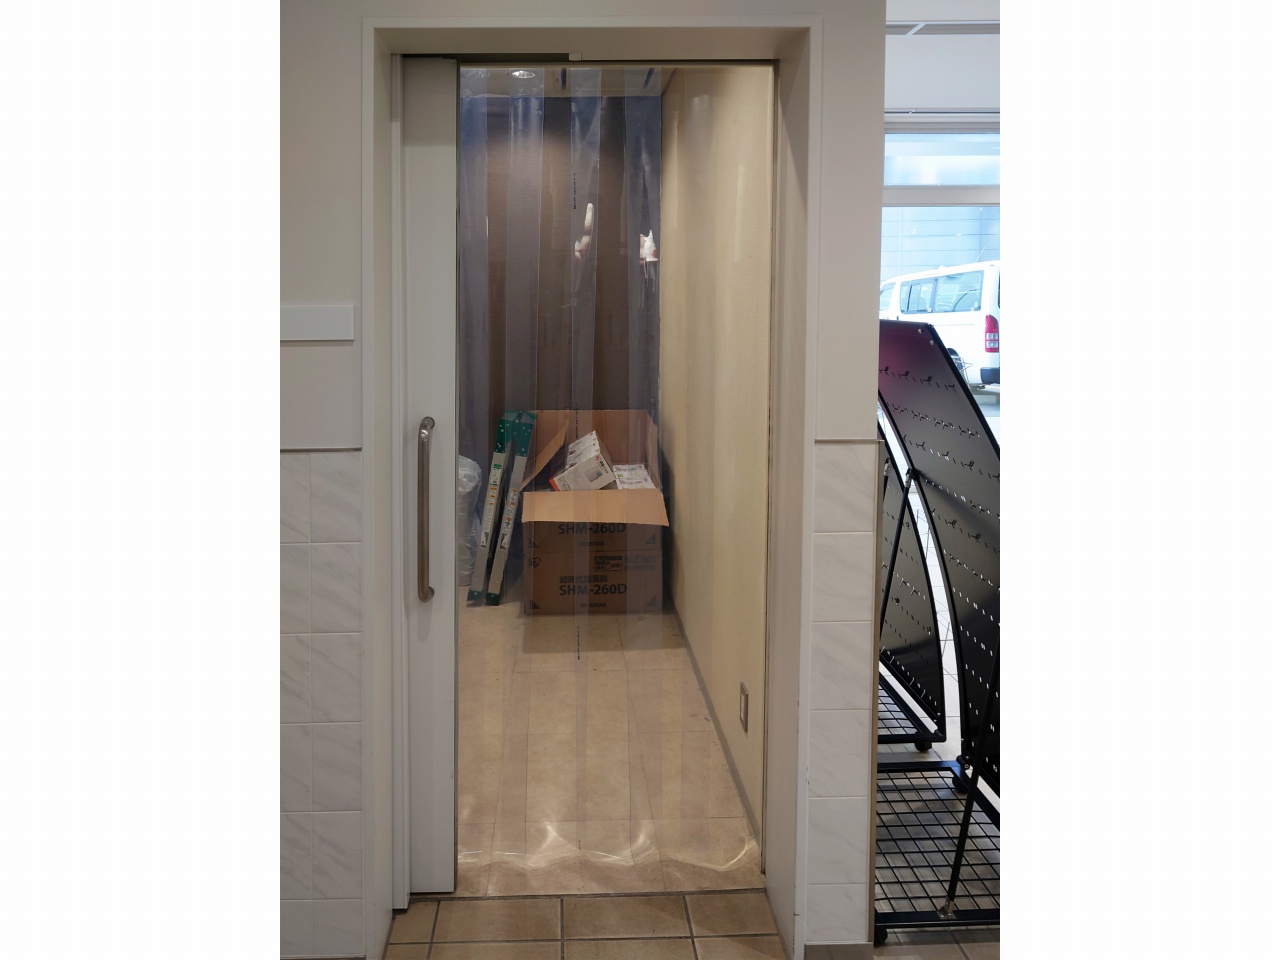 岩手県盛岡市にあるホテルの喫煙室に十分な流入風を確保するため、出入口にのれんカーテンを設置しました